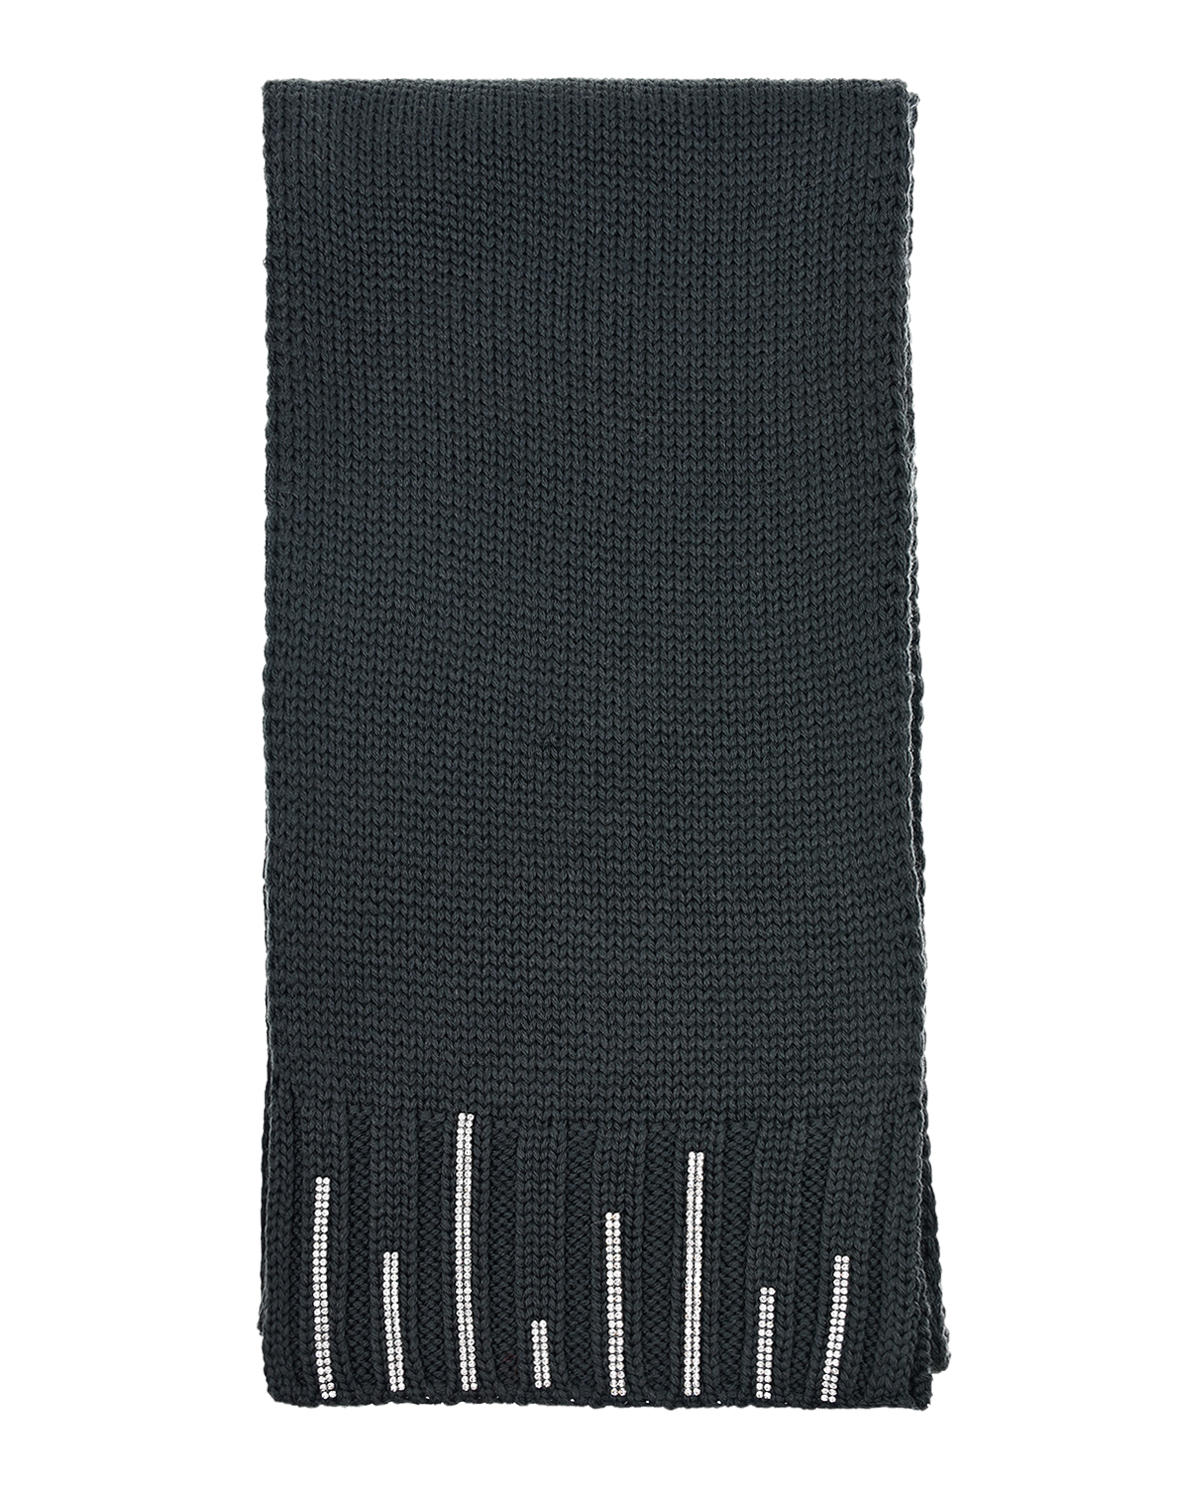 Серый шарф со стразами Joli Bebe детский, размер unica - фото 2